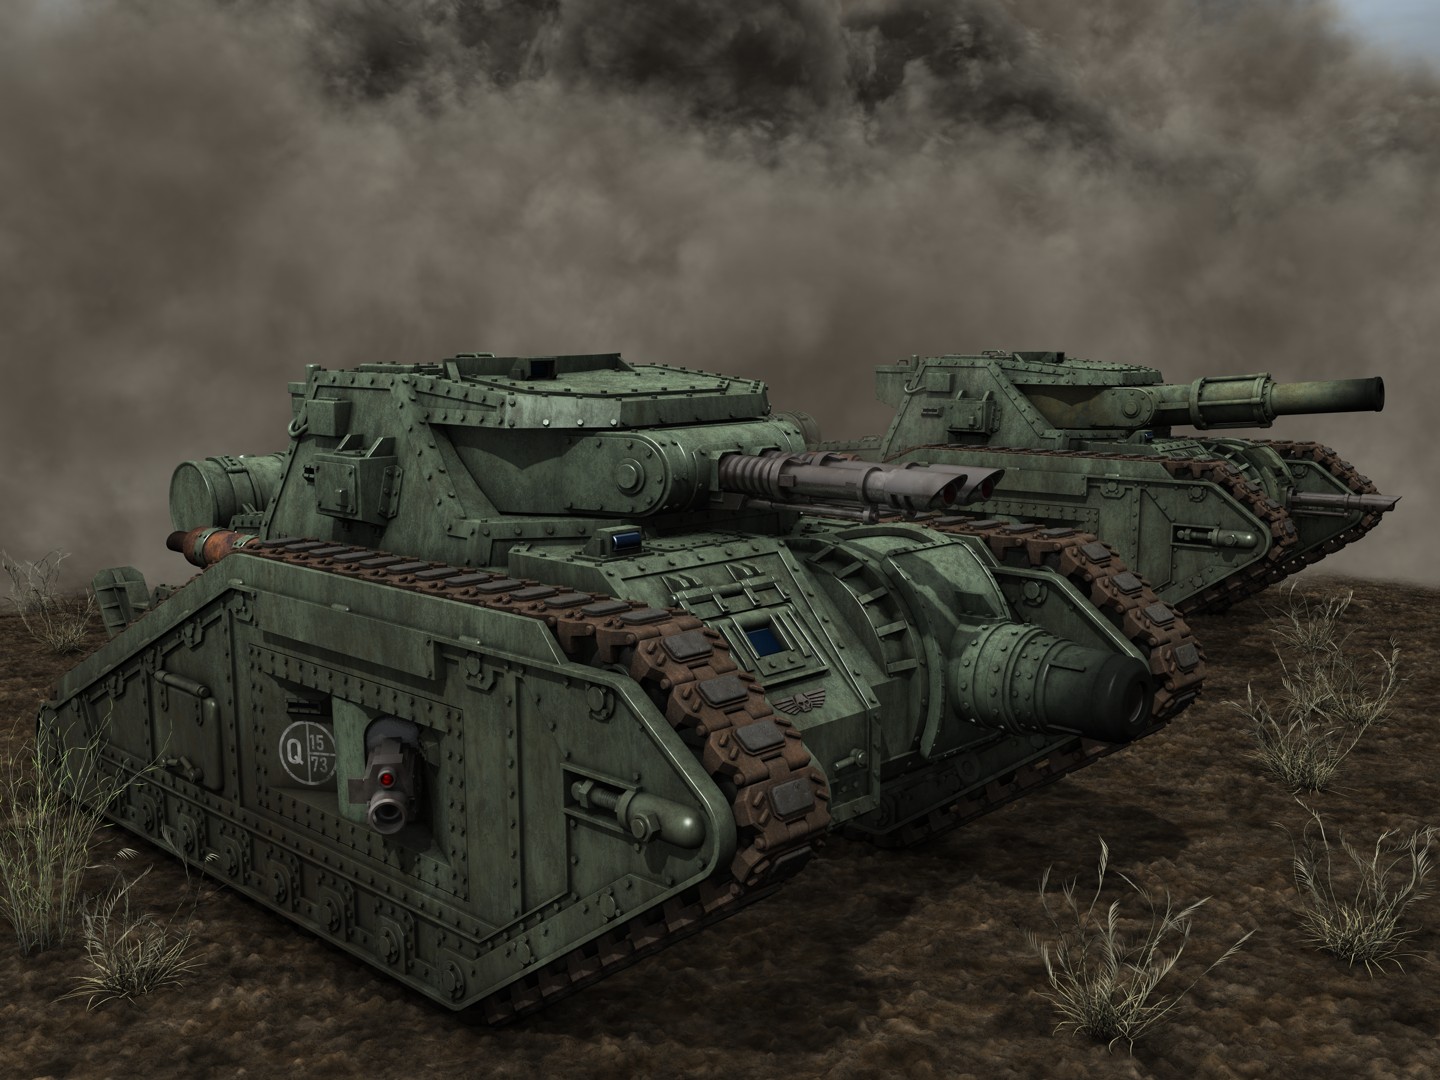 Malcador heavy tank